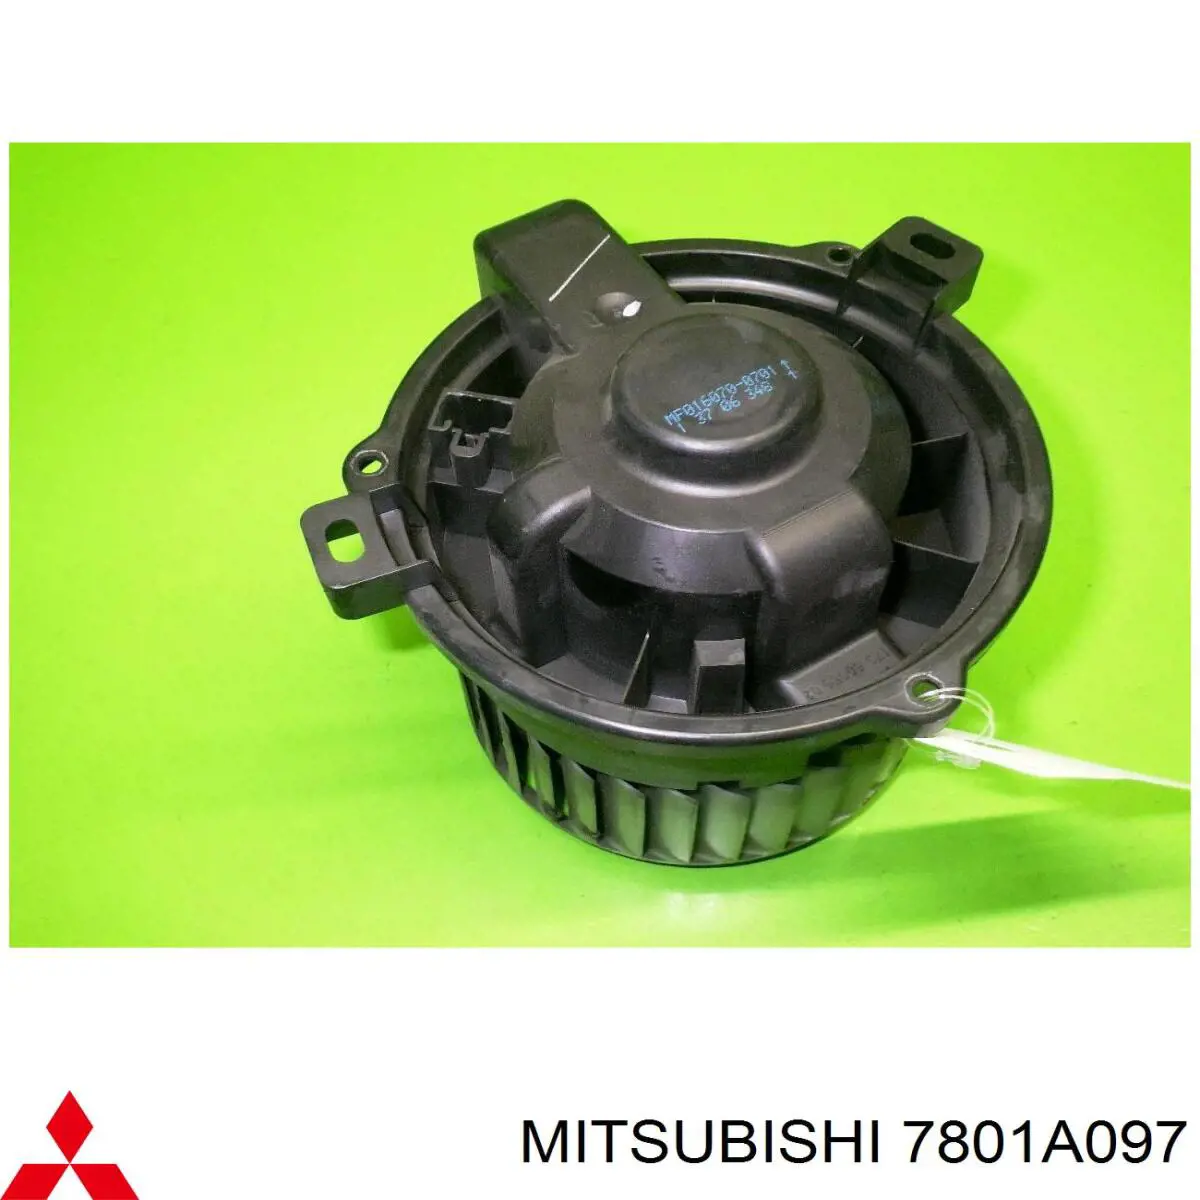 7801A097 Mitsubishi ventilador habitáculo